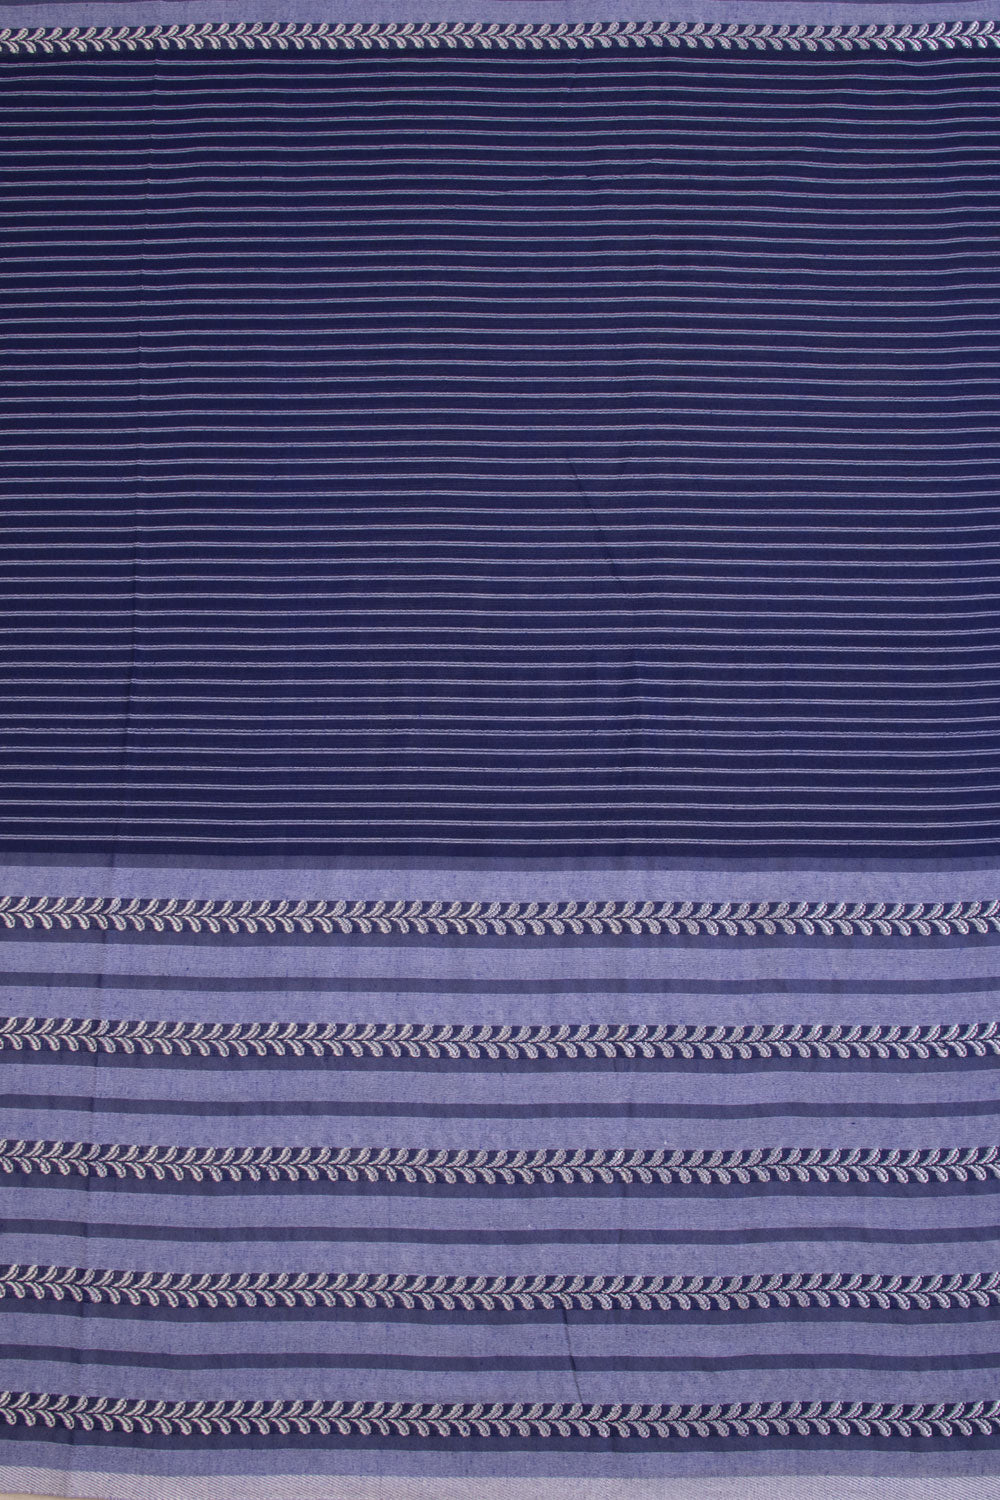 Blue Shantipur Tant Bengal Cotton Saree 10068804 - Avishya